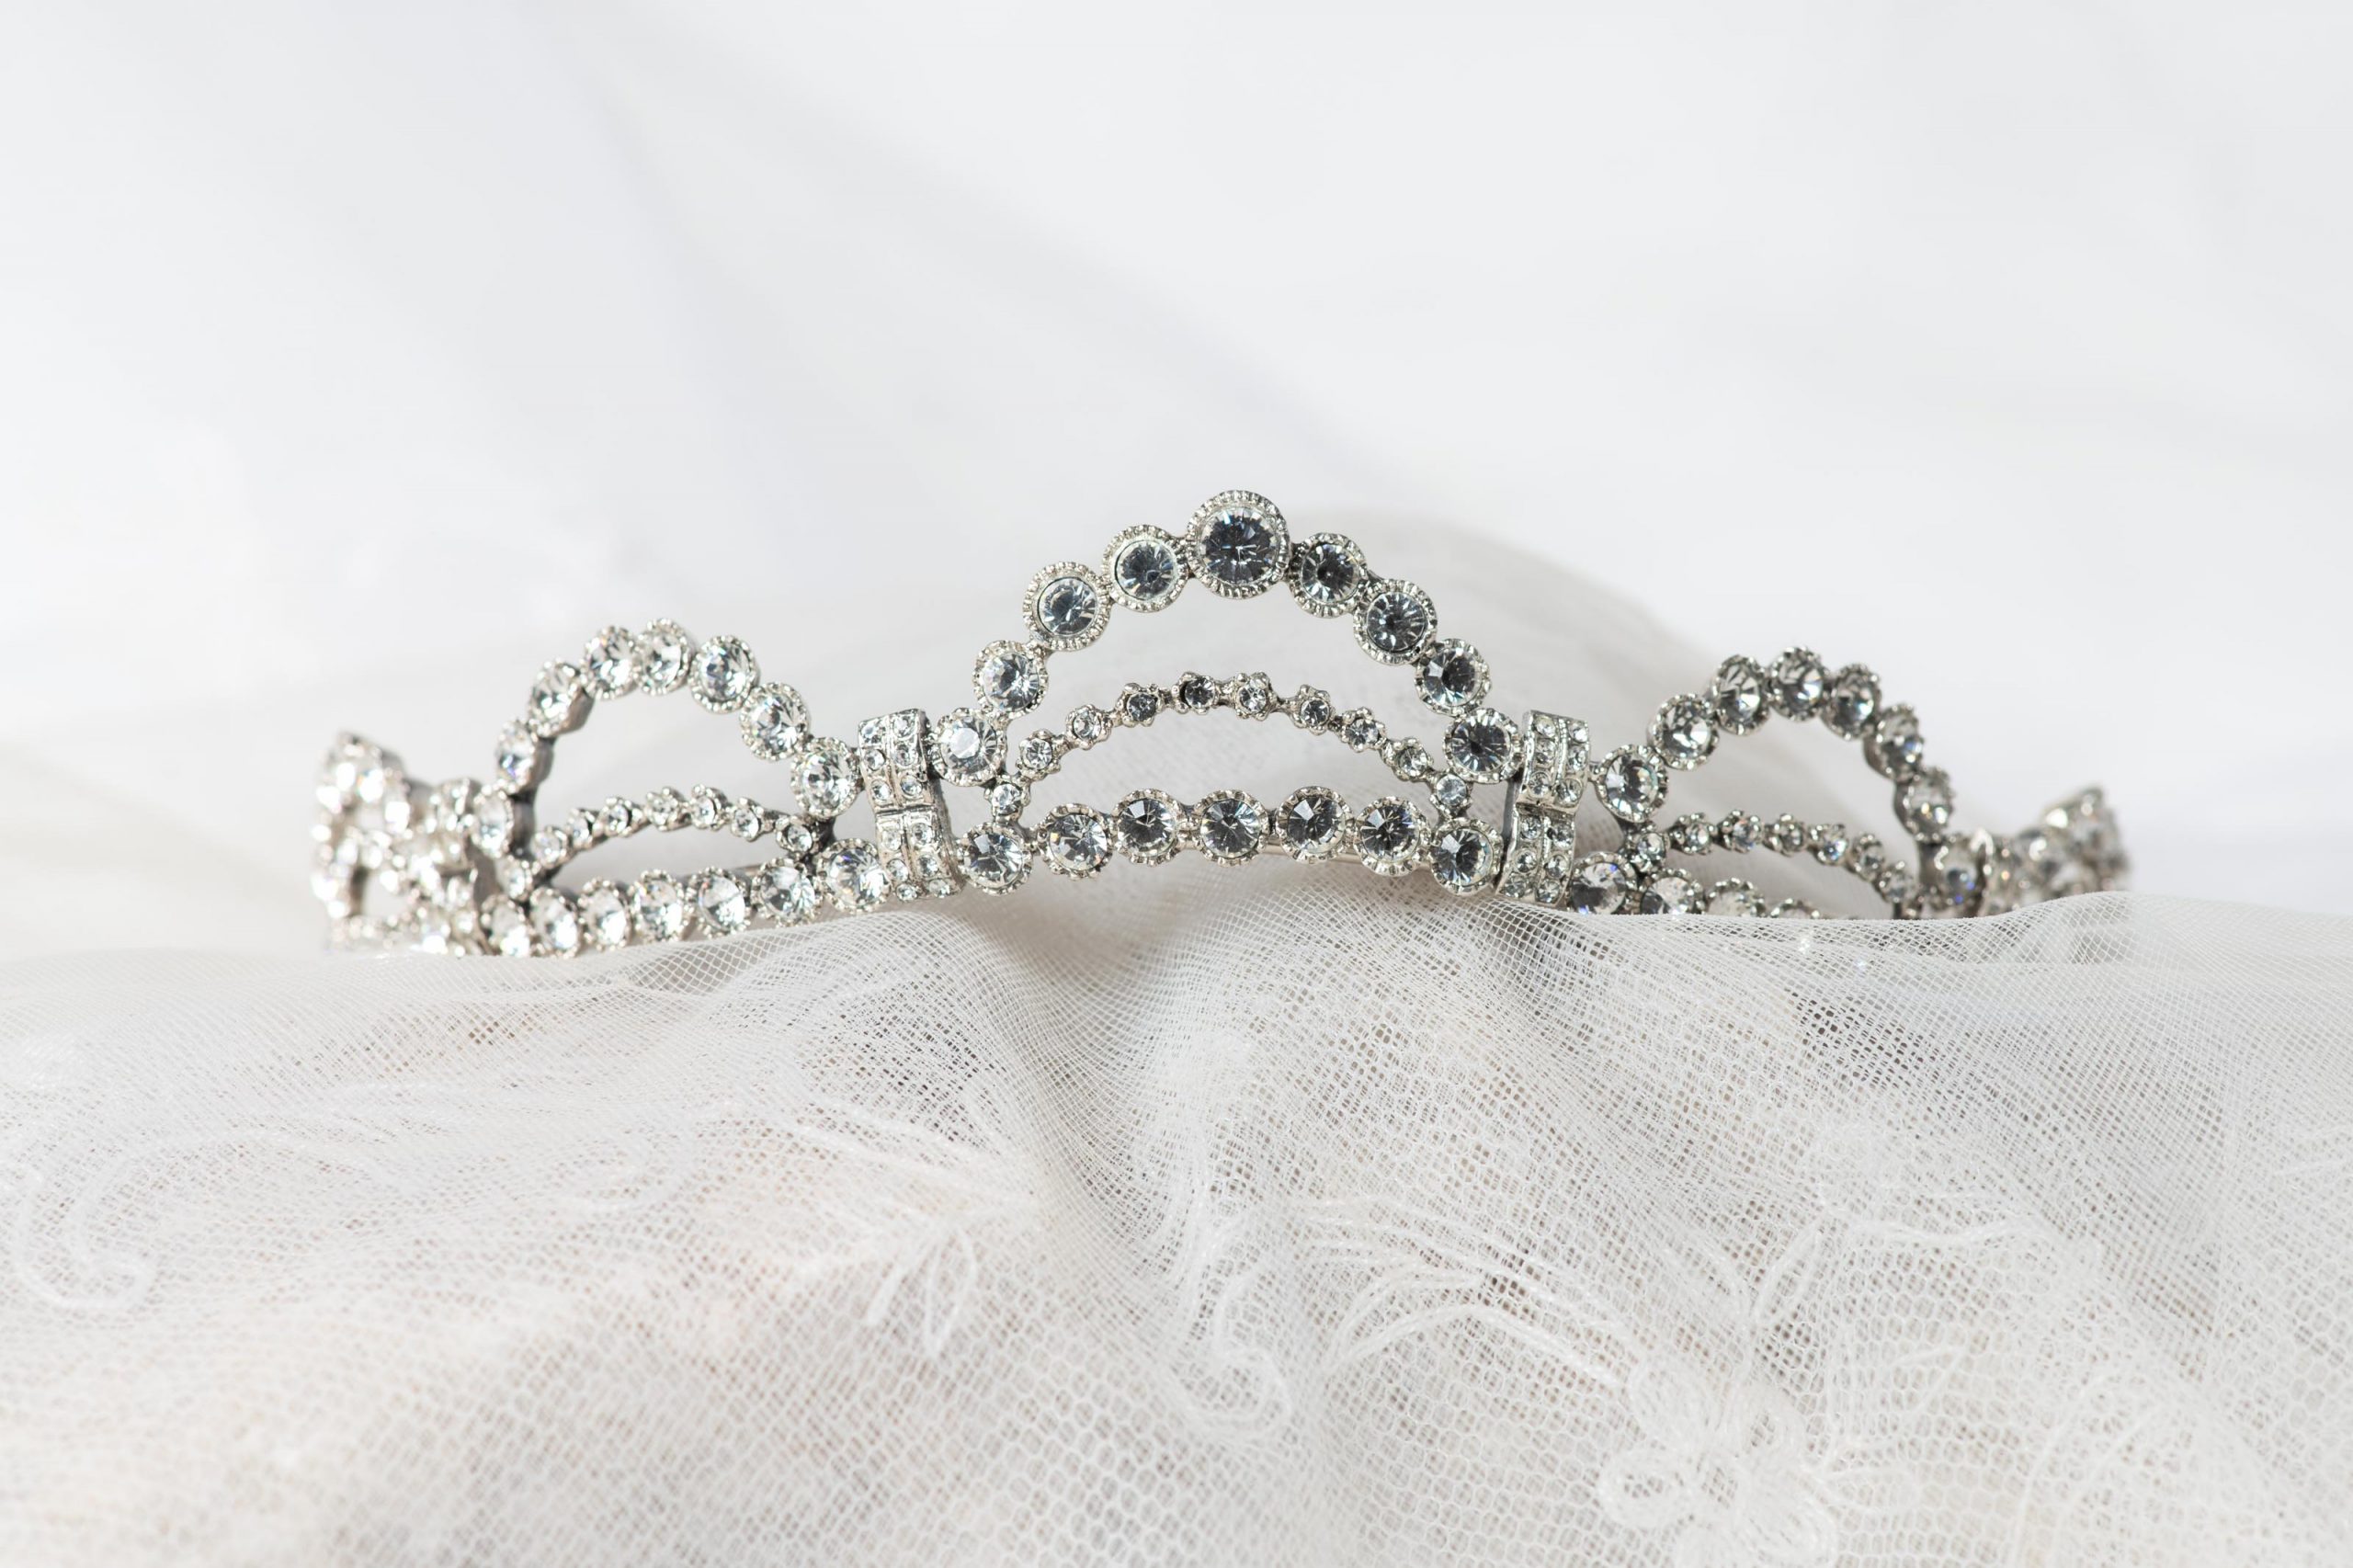 Tiara de plata y circonitas inspirada en la Tiara de Grace Kelly